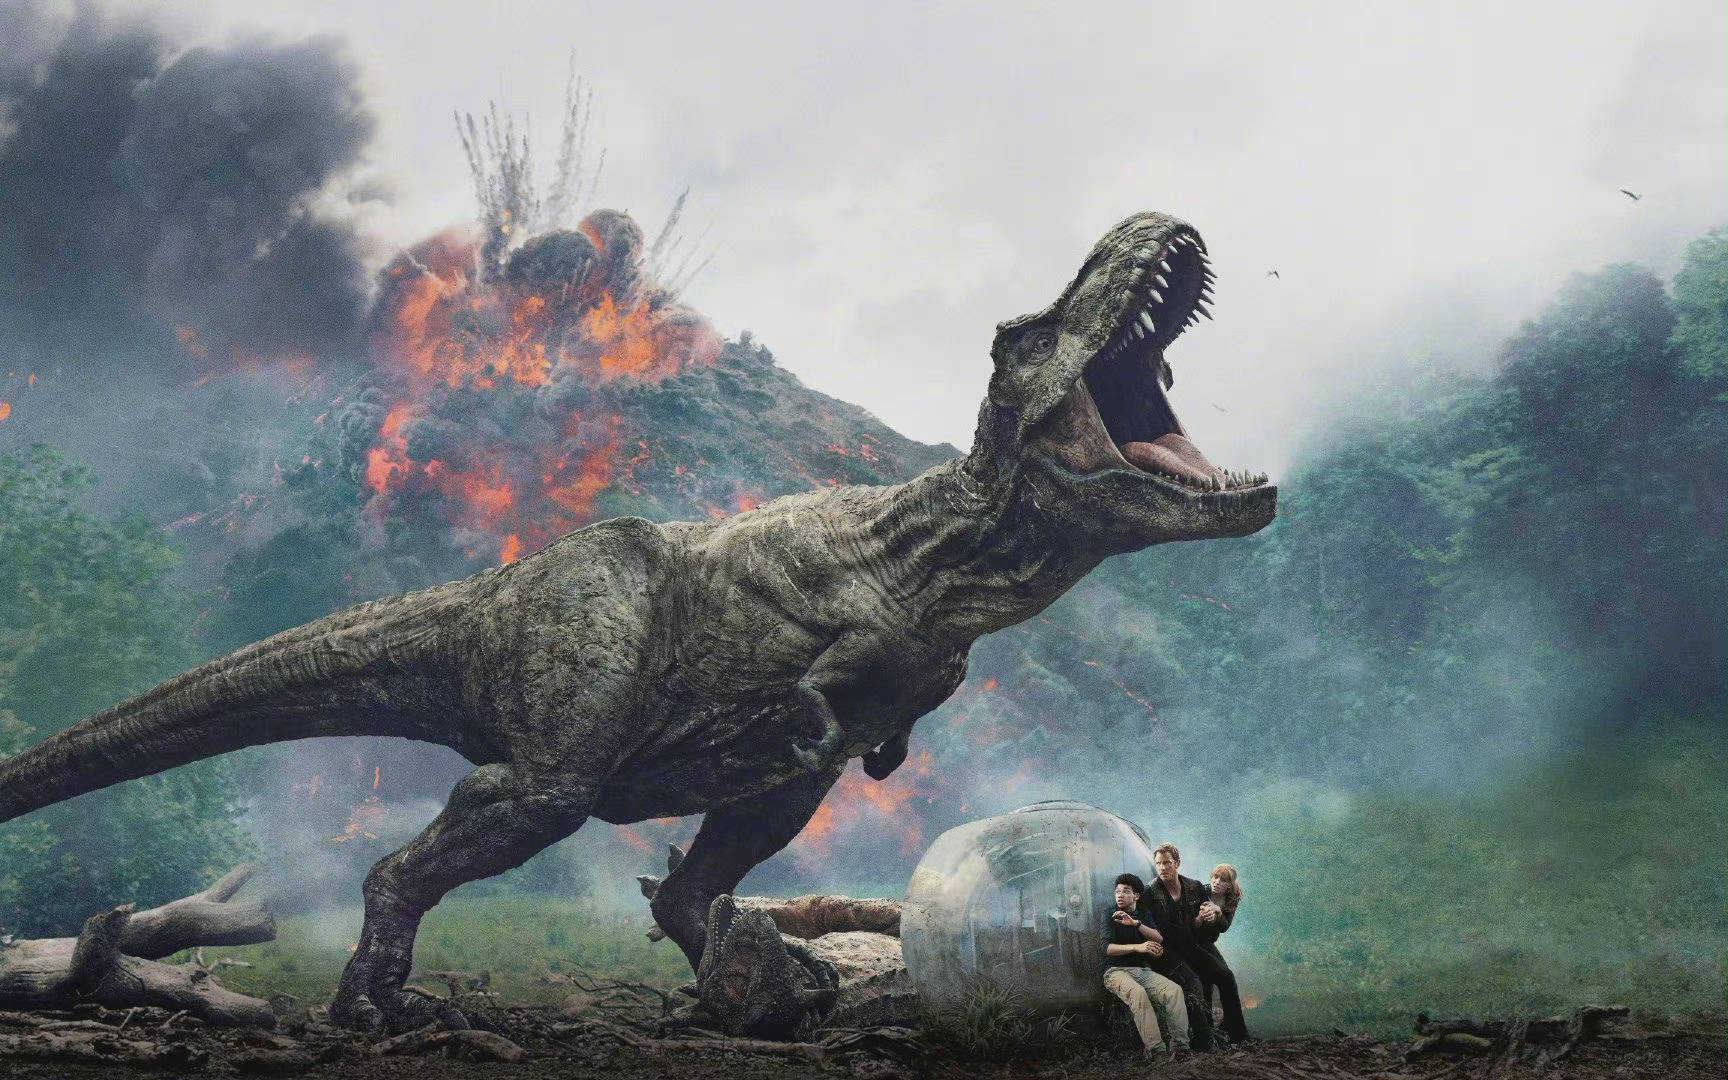 新一部《侏罗纪世界》定档2025.7.2北美上映 《疾速追杀》大卫·雷奇有望执导